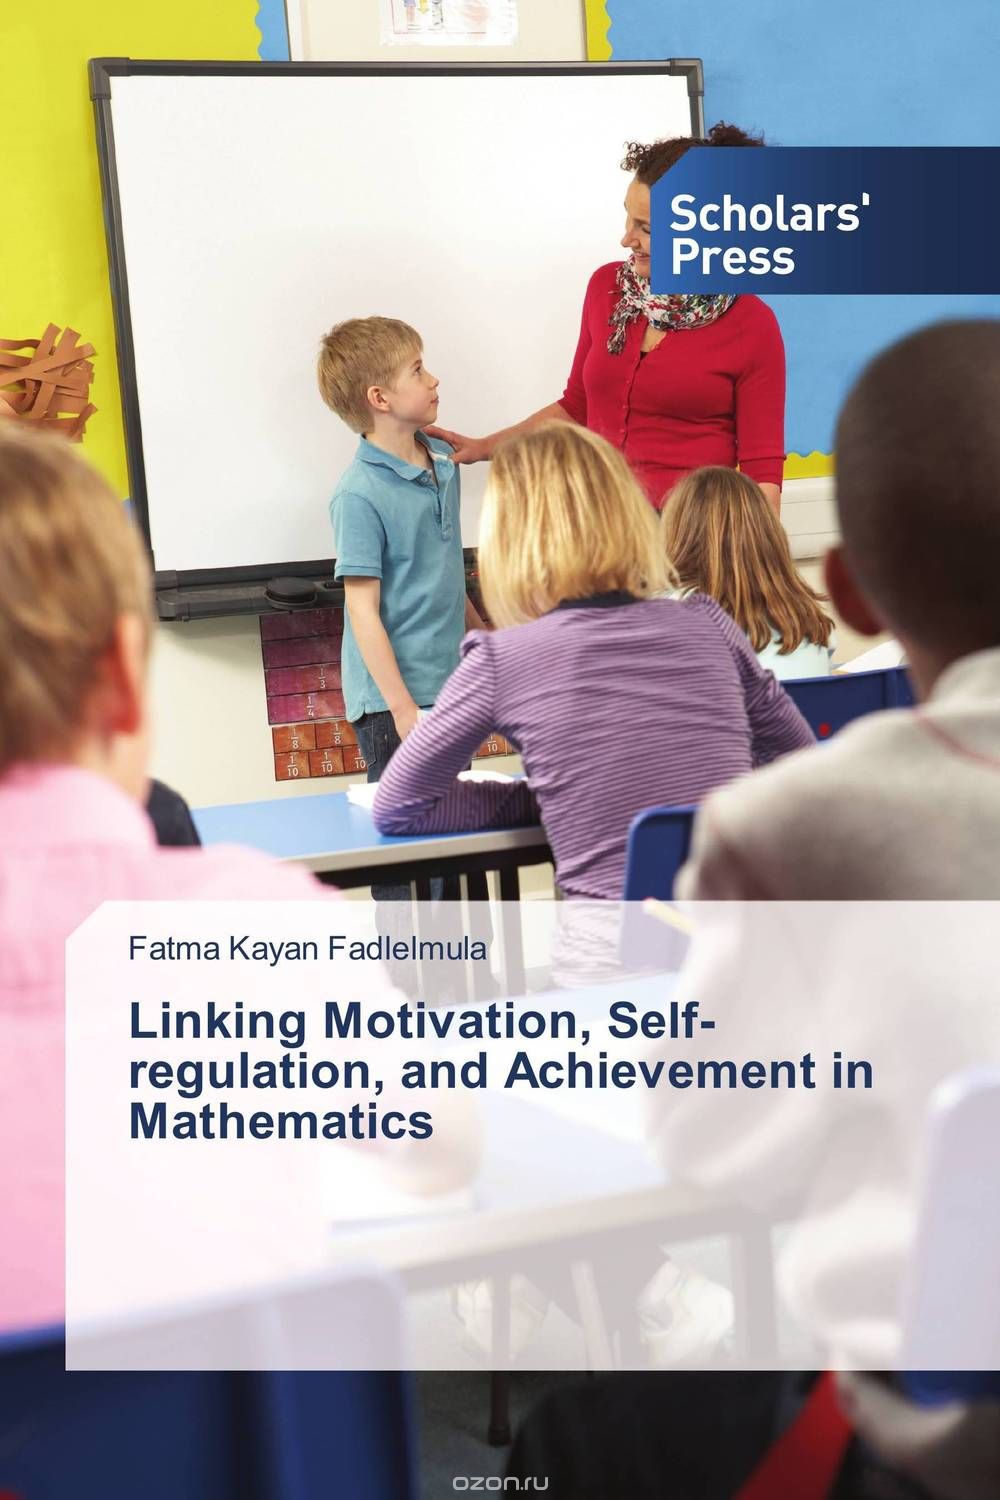 Скачать книгу "Linking Motivation, Self-regulation, and Achievement in Mathematics"